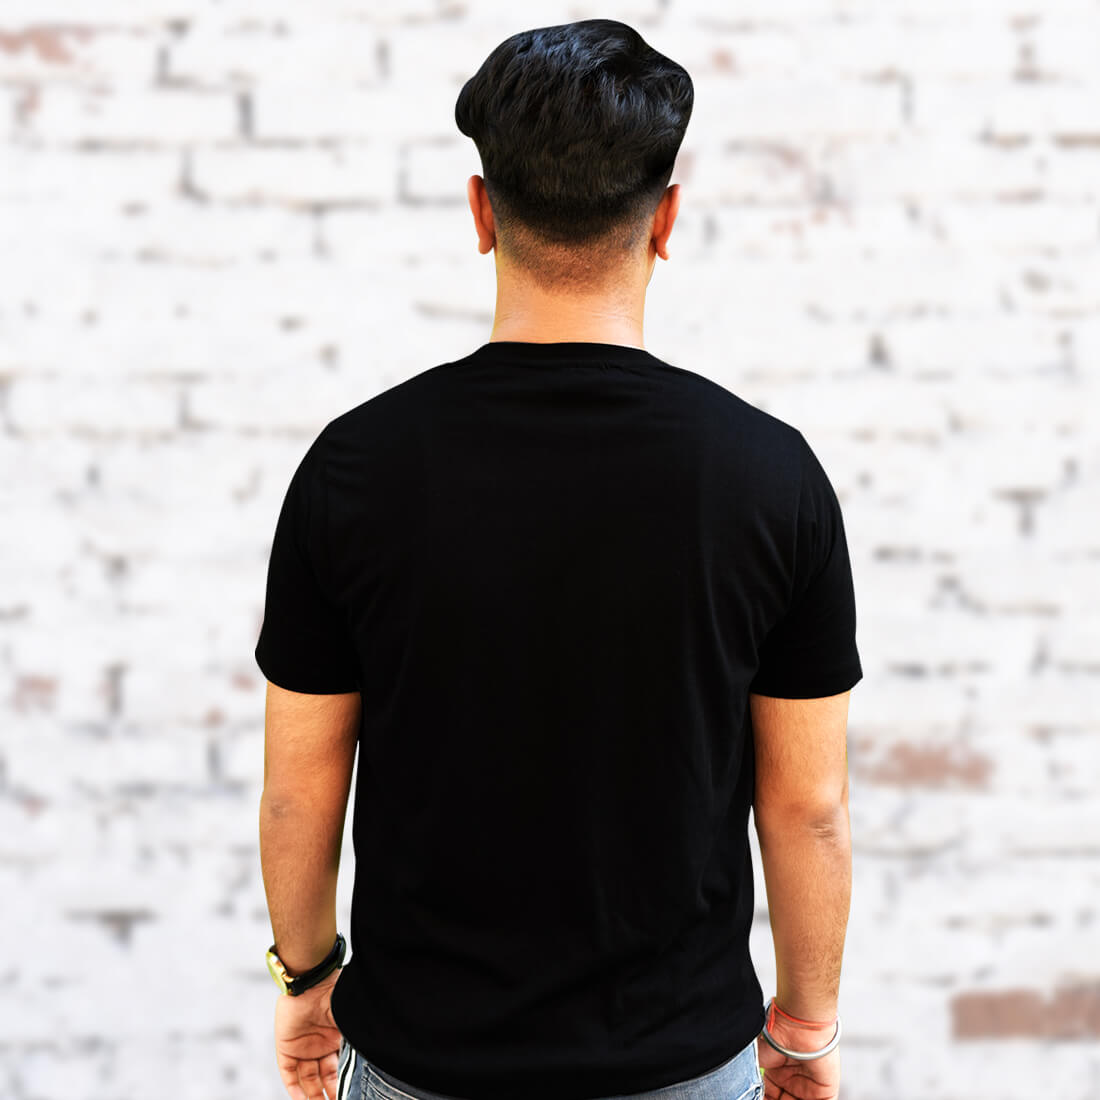 Adiyogi Best Images black T-Shirt Front and Back